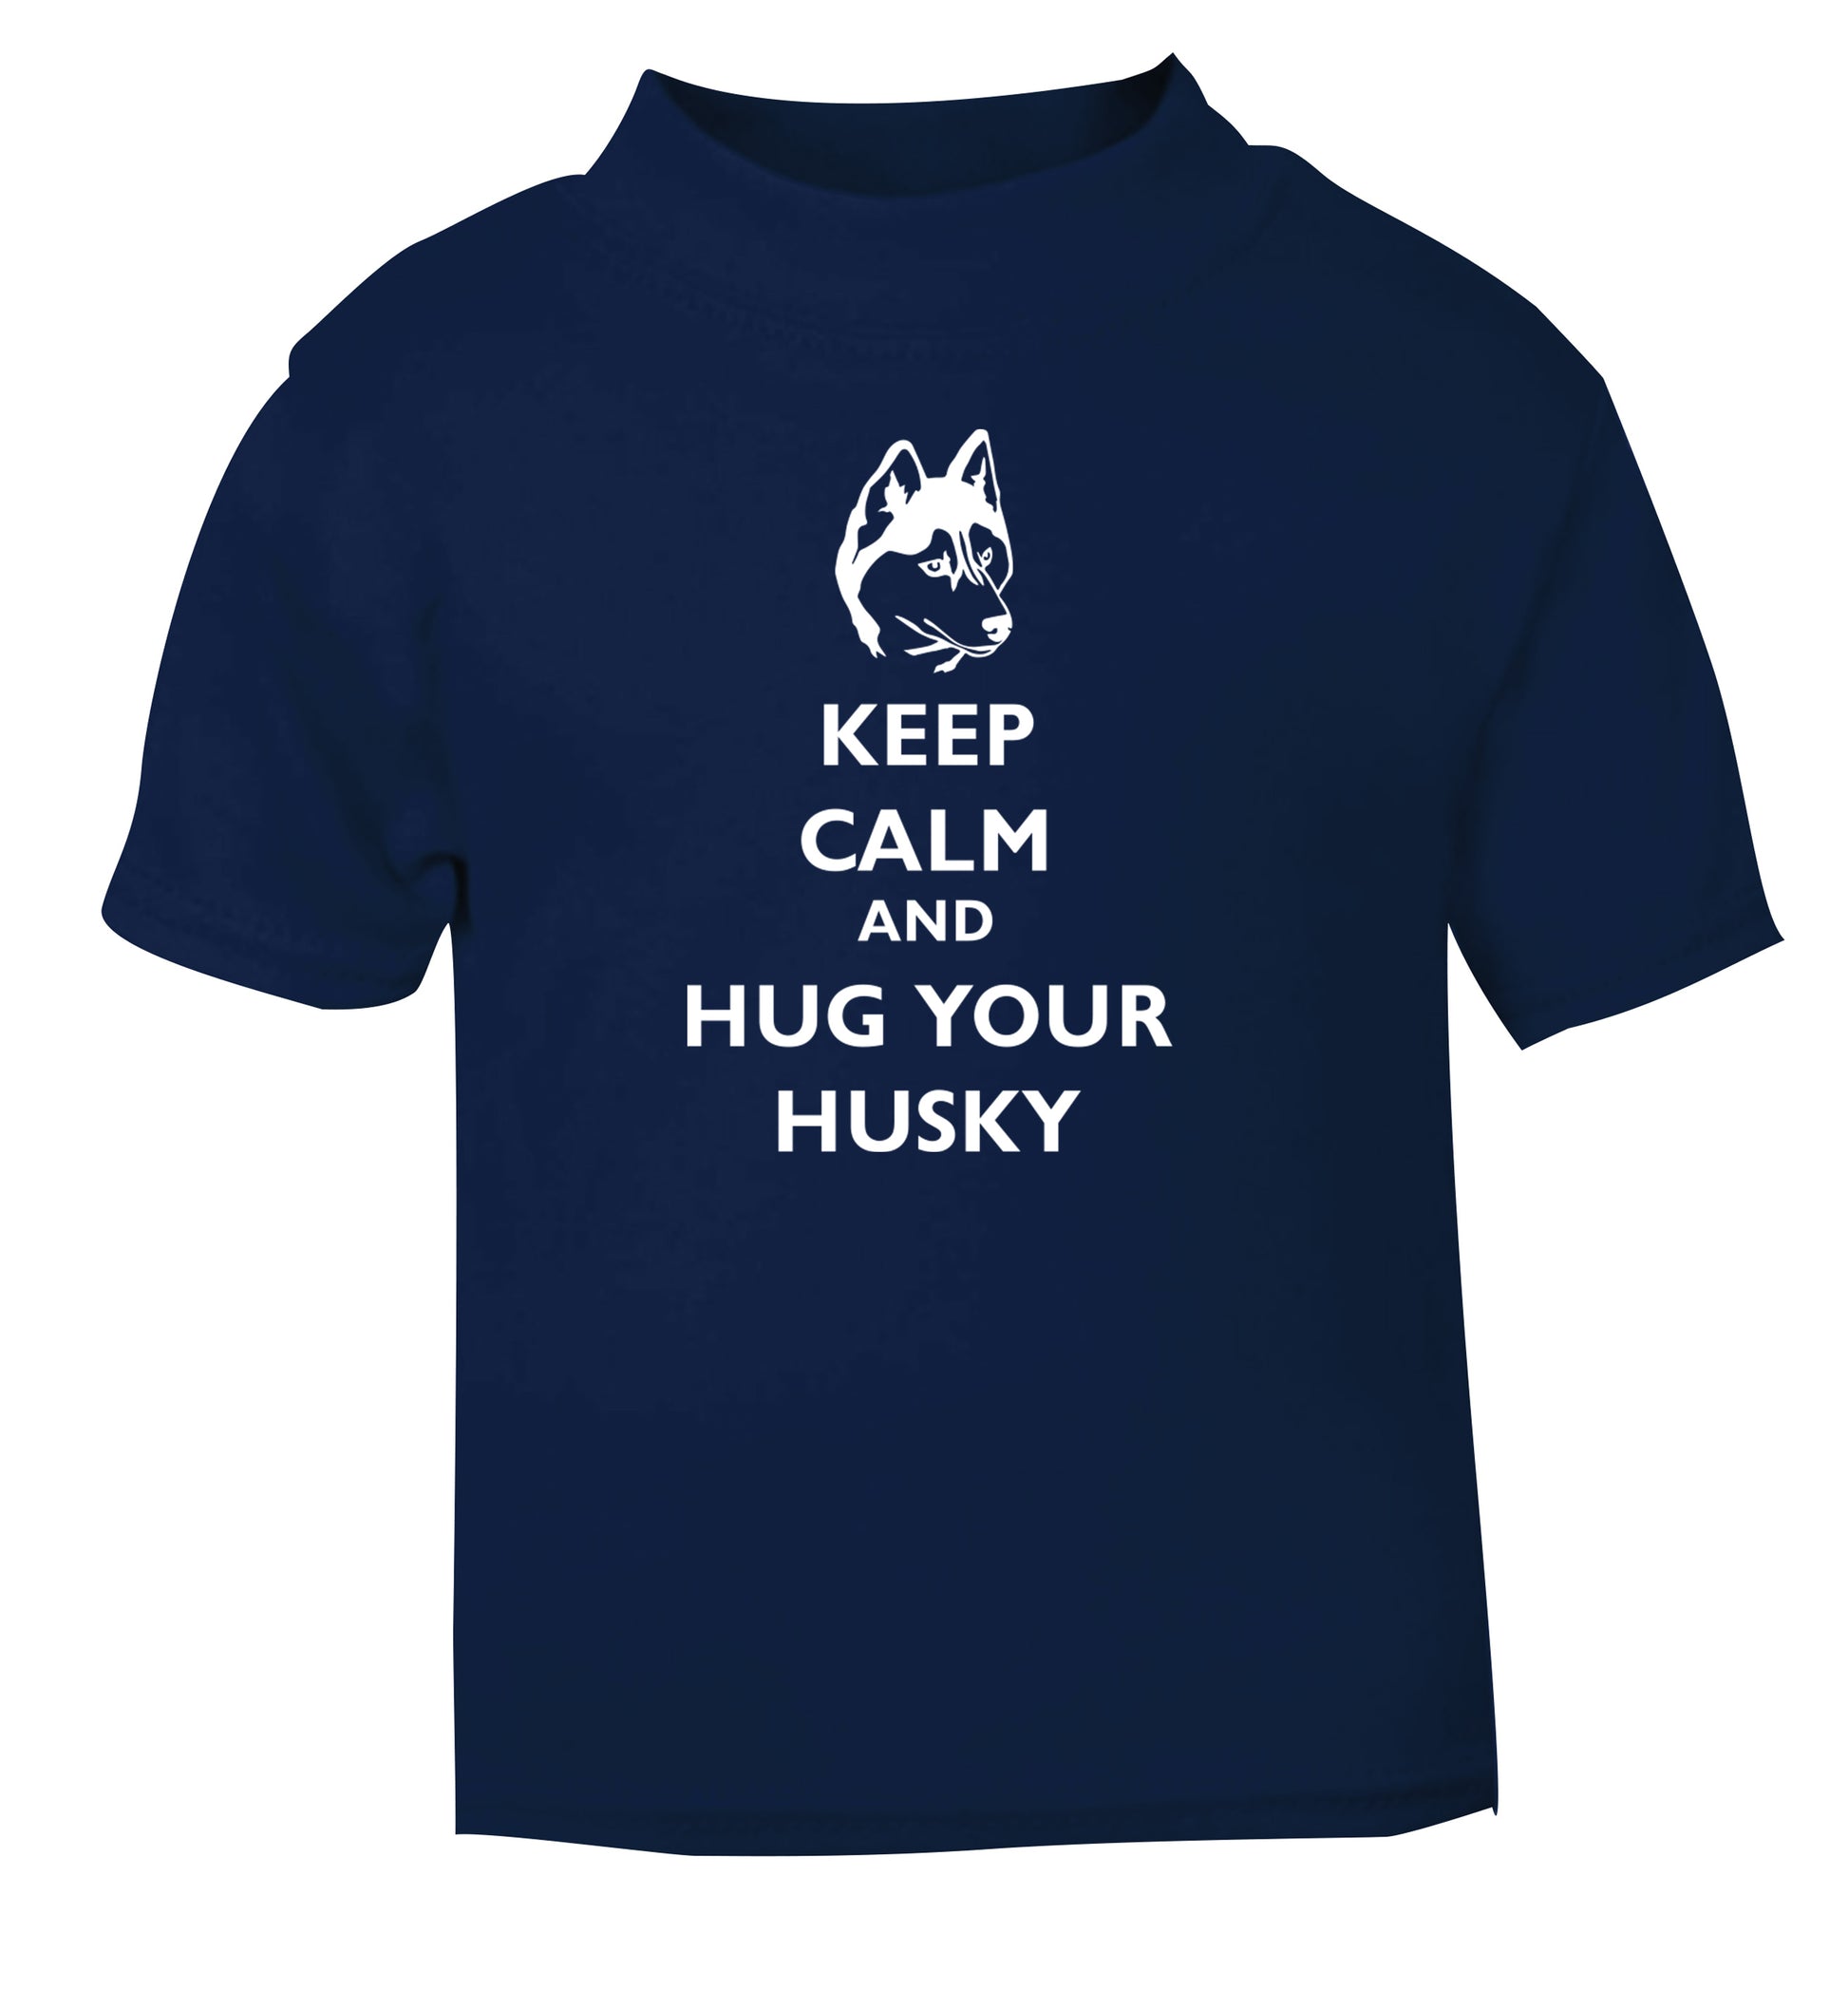 Keep calm and hug your husky navy Baby Toddler Tshirt 2 Years